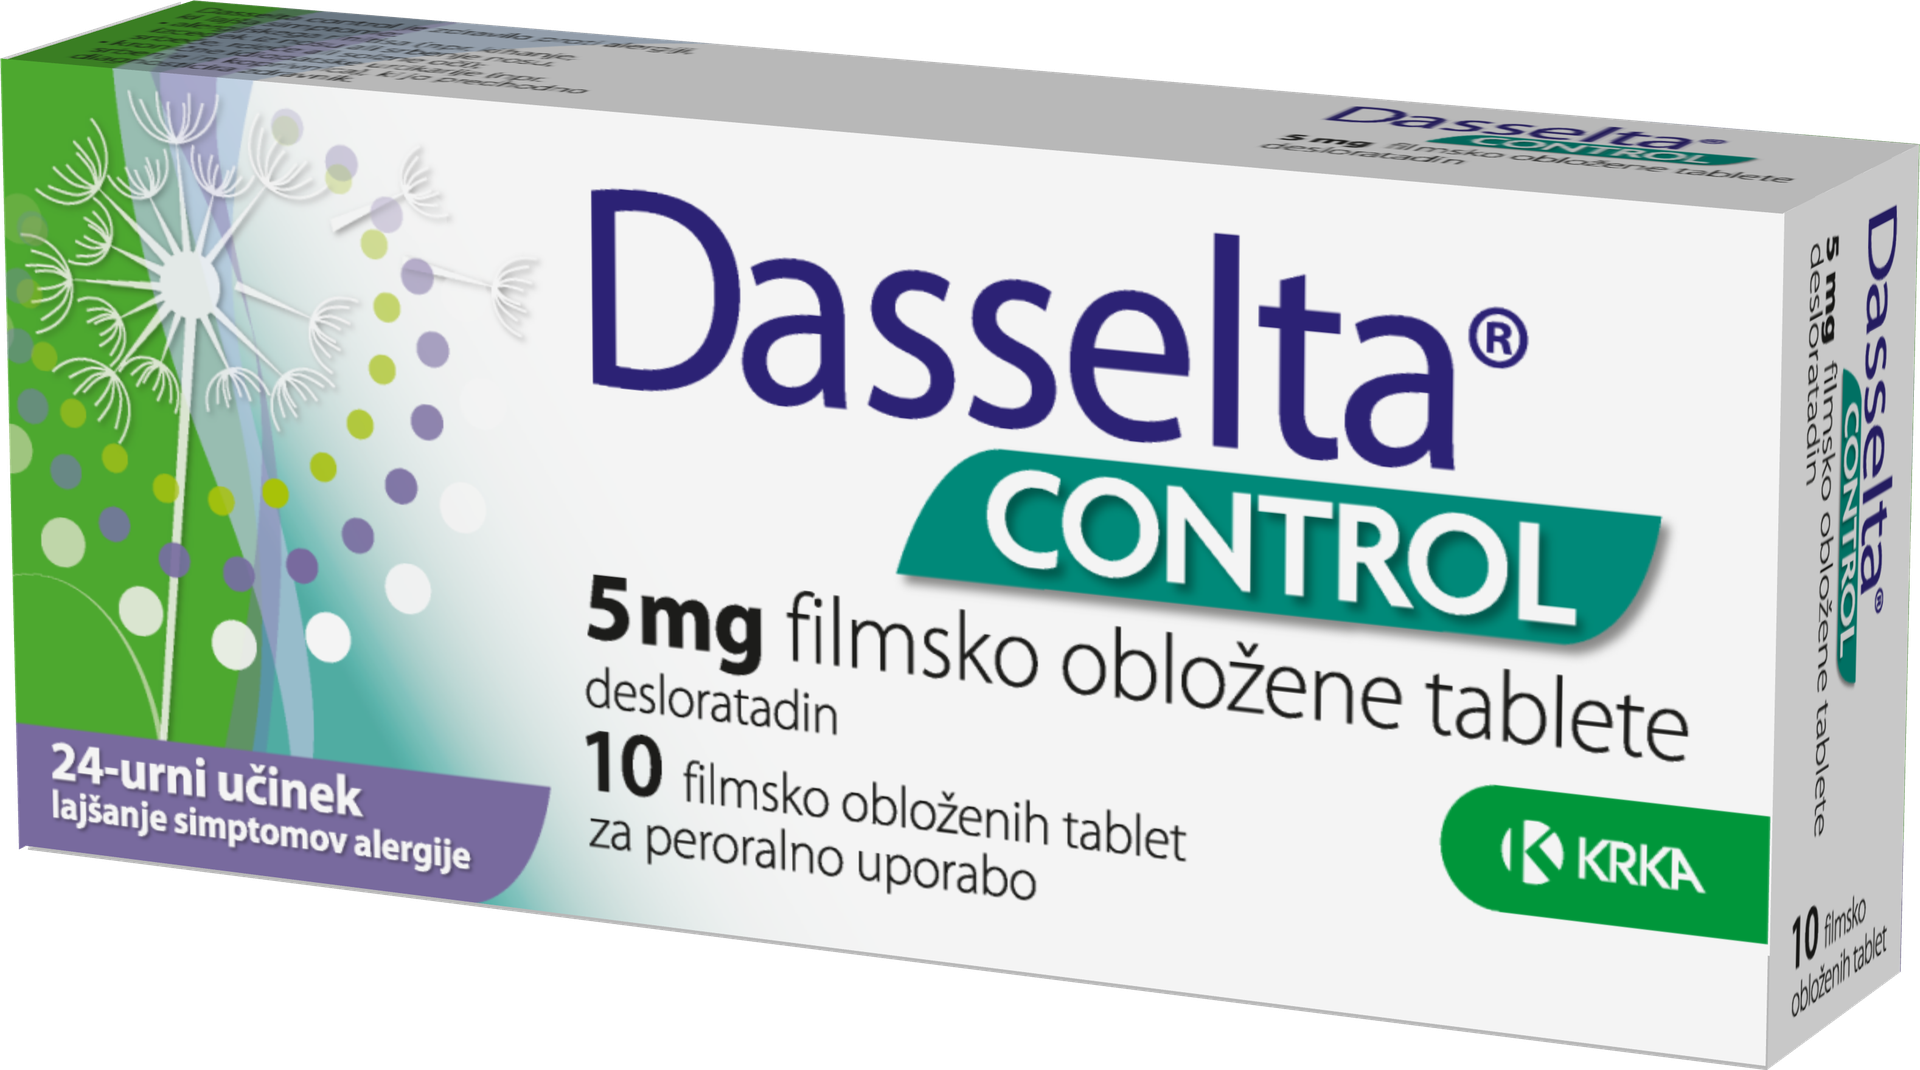 Dasselta control 5 mg, 10 filmsko obloženih tablet